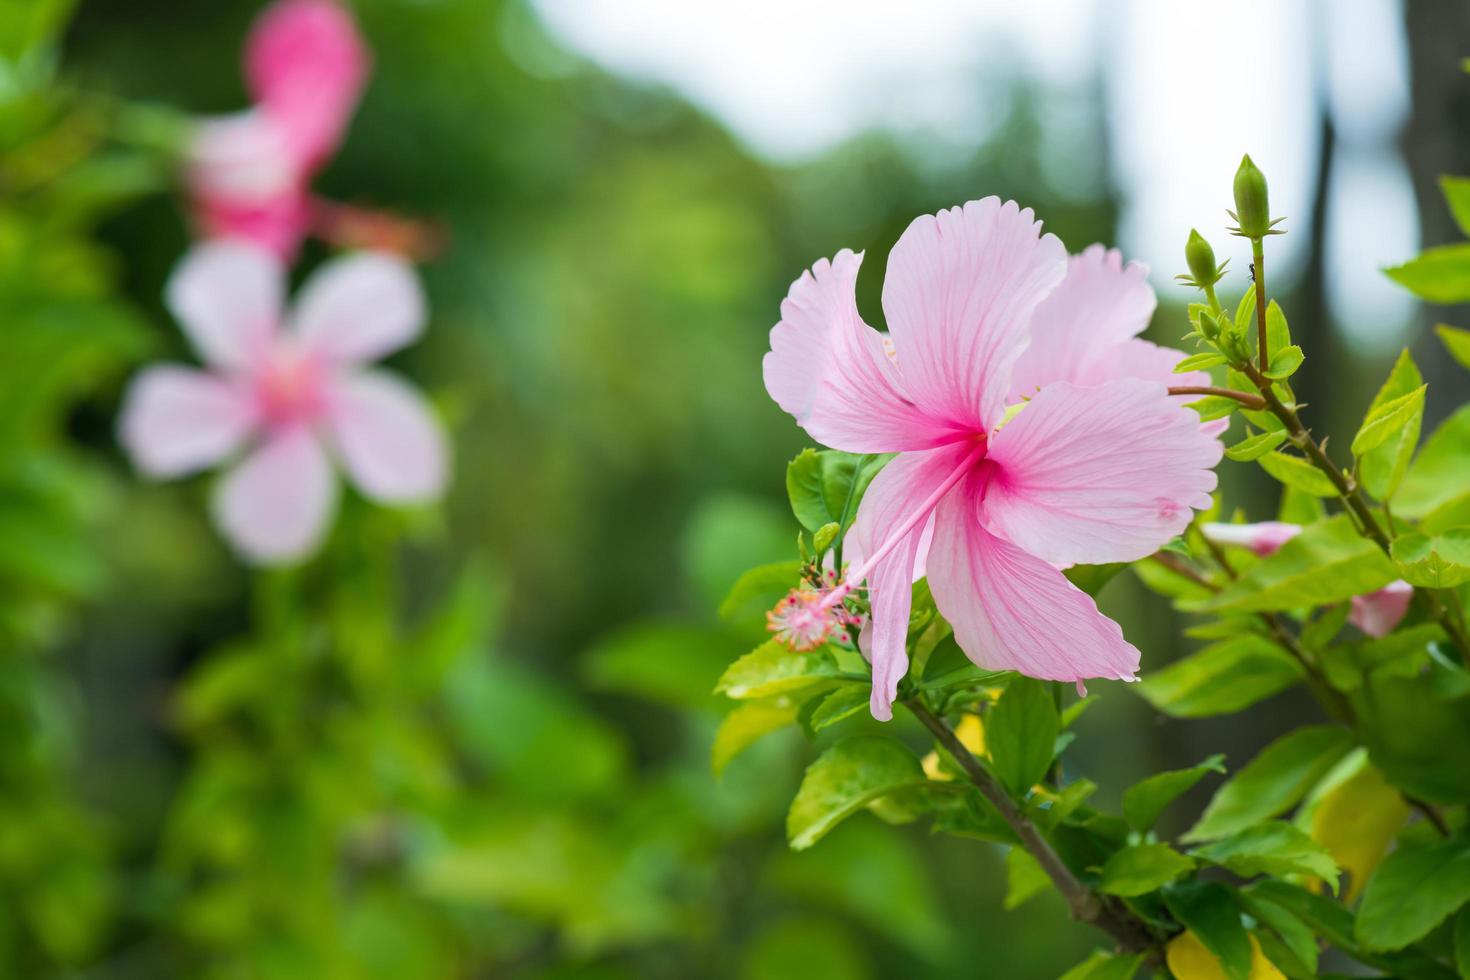 rosa hibiskus blomma blomning på grön natur bakgrund. tropisk frodig lövverk, solig exotisk blomning blommig natur. bokeh fläck naturlig trädgård, närbild flora i sommar trädgård foto